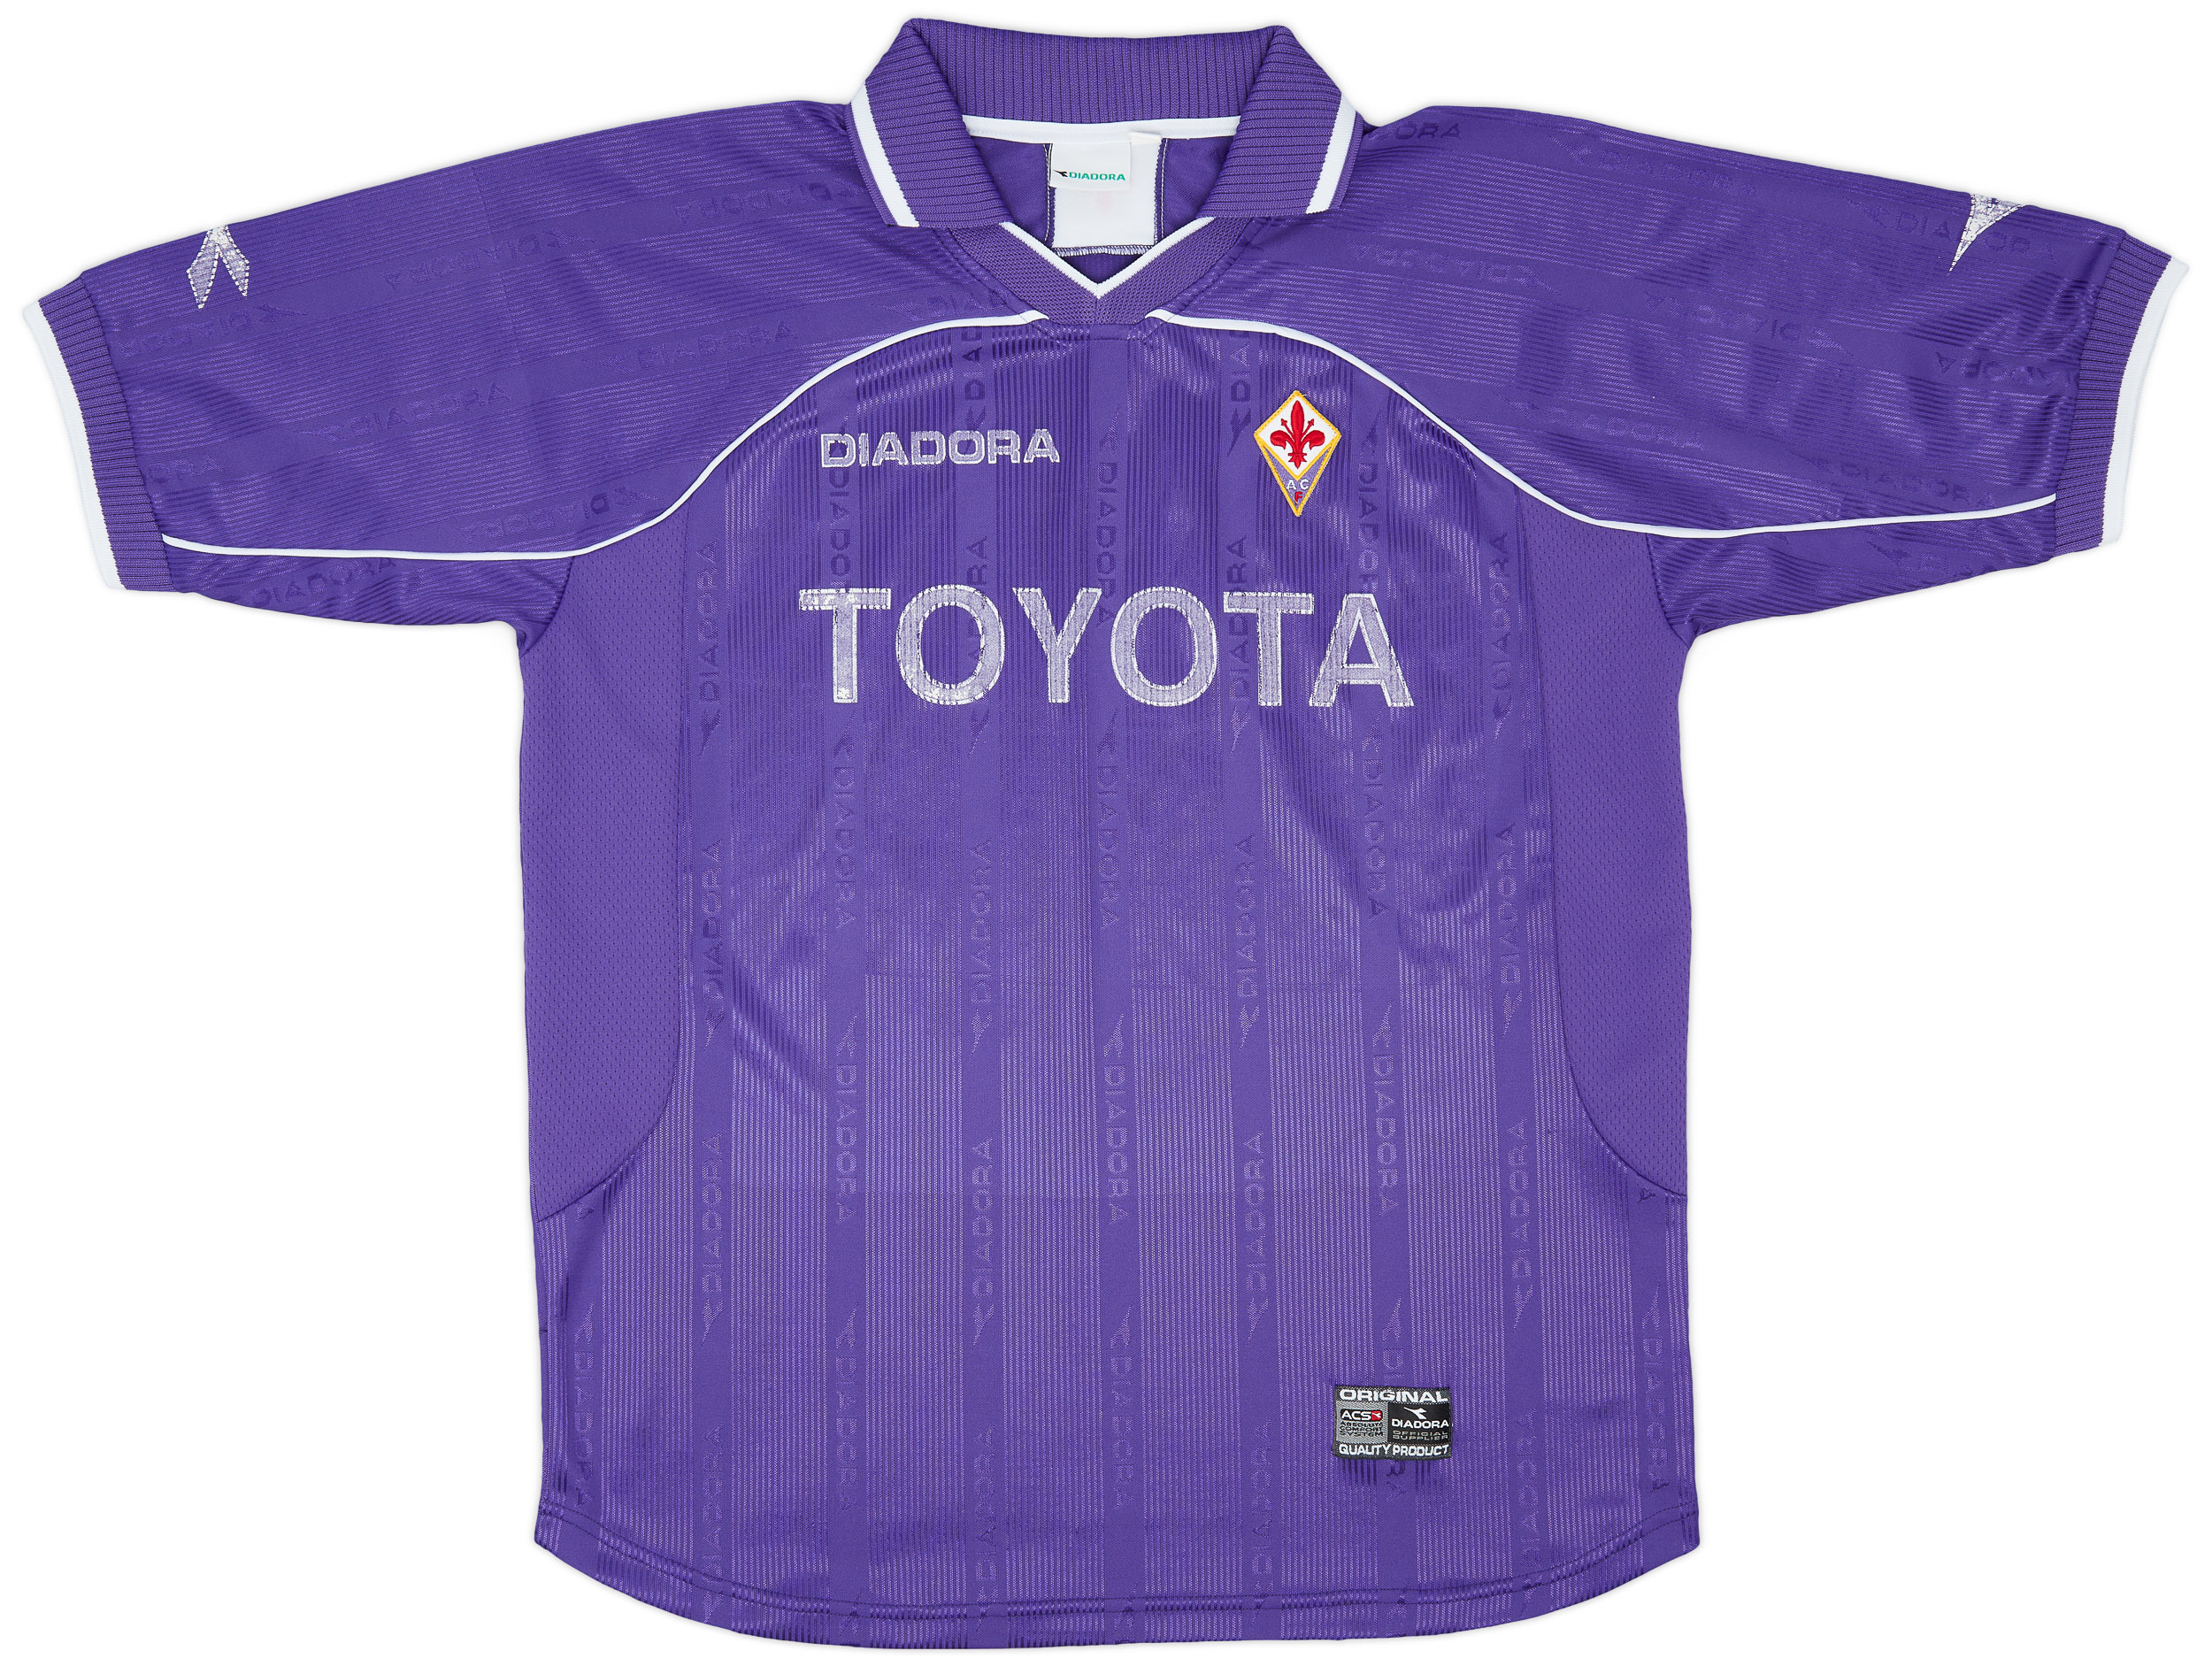 Fiorentina  home forma (Original)